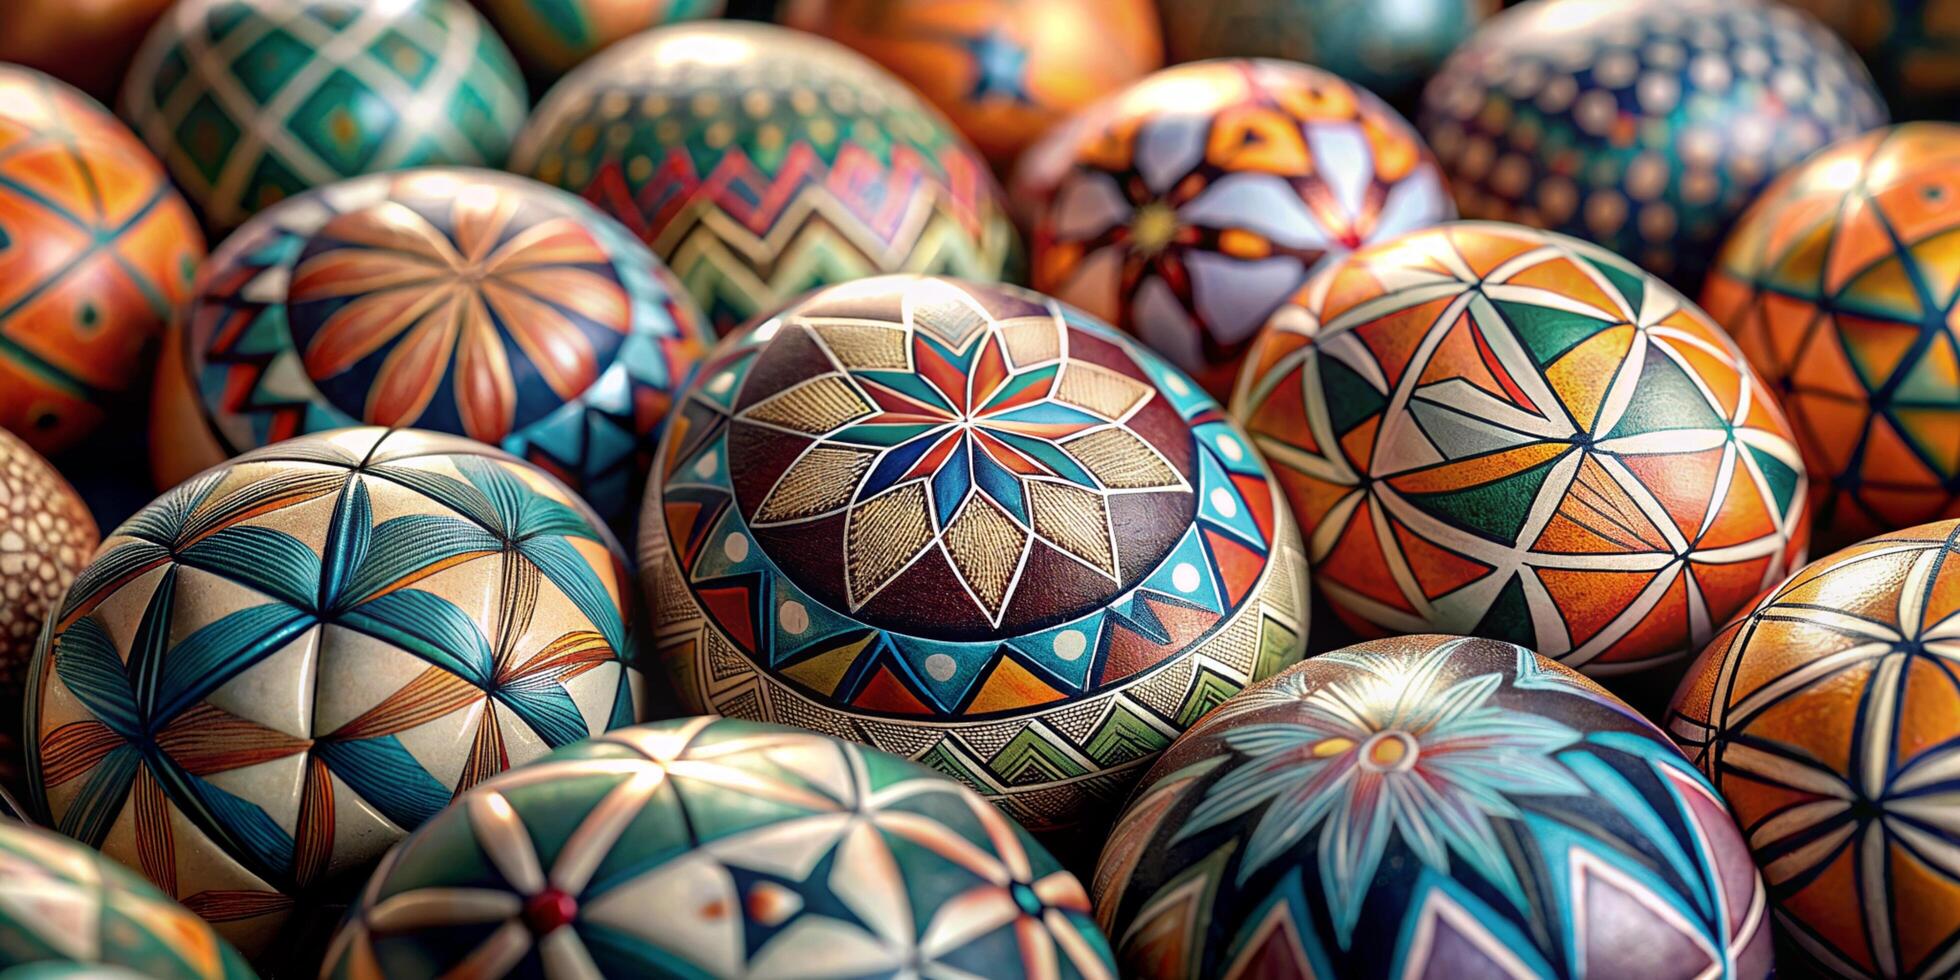 fermer beaucoup de magnifiquement peint Pâques œufs, magnifique traditionnel modèle Pâques des œufs photo